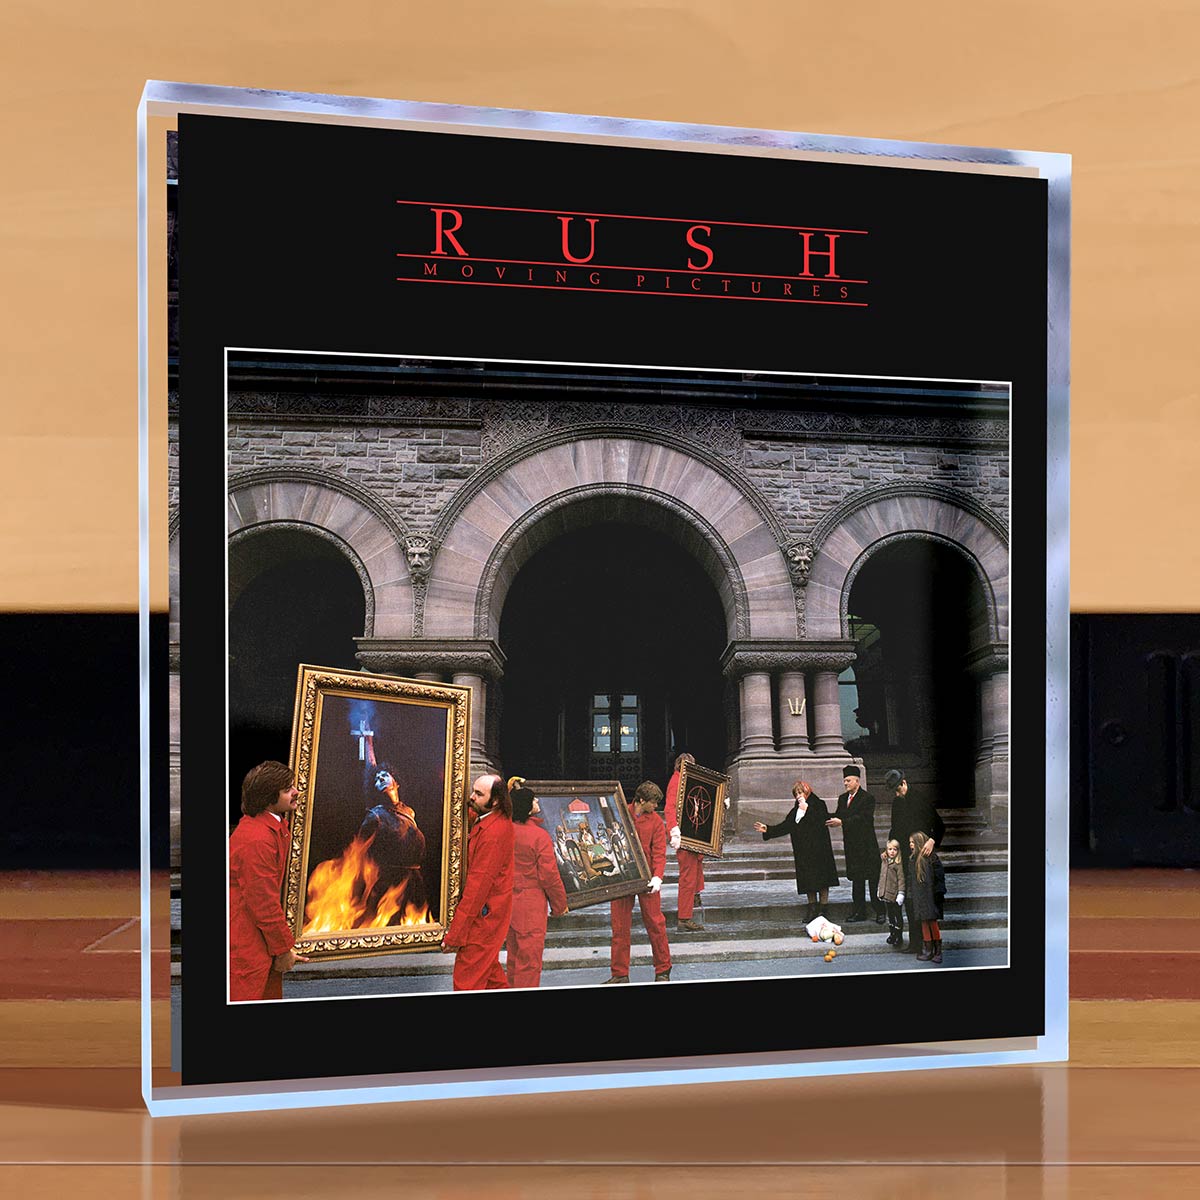 Rush CD